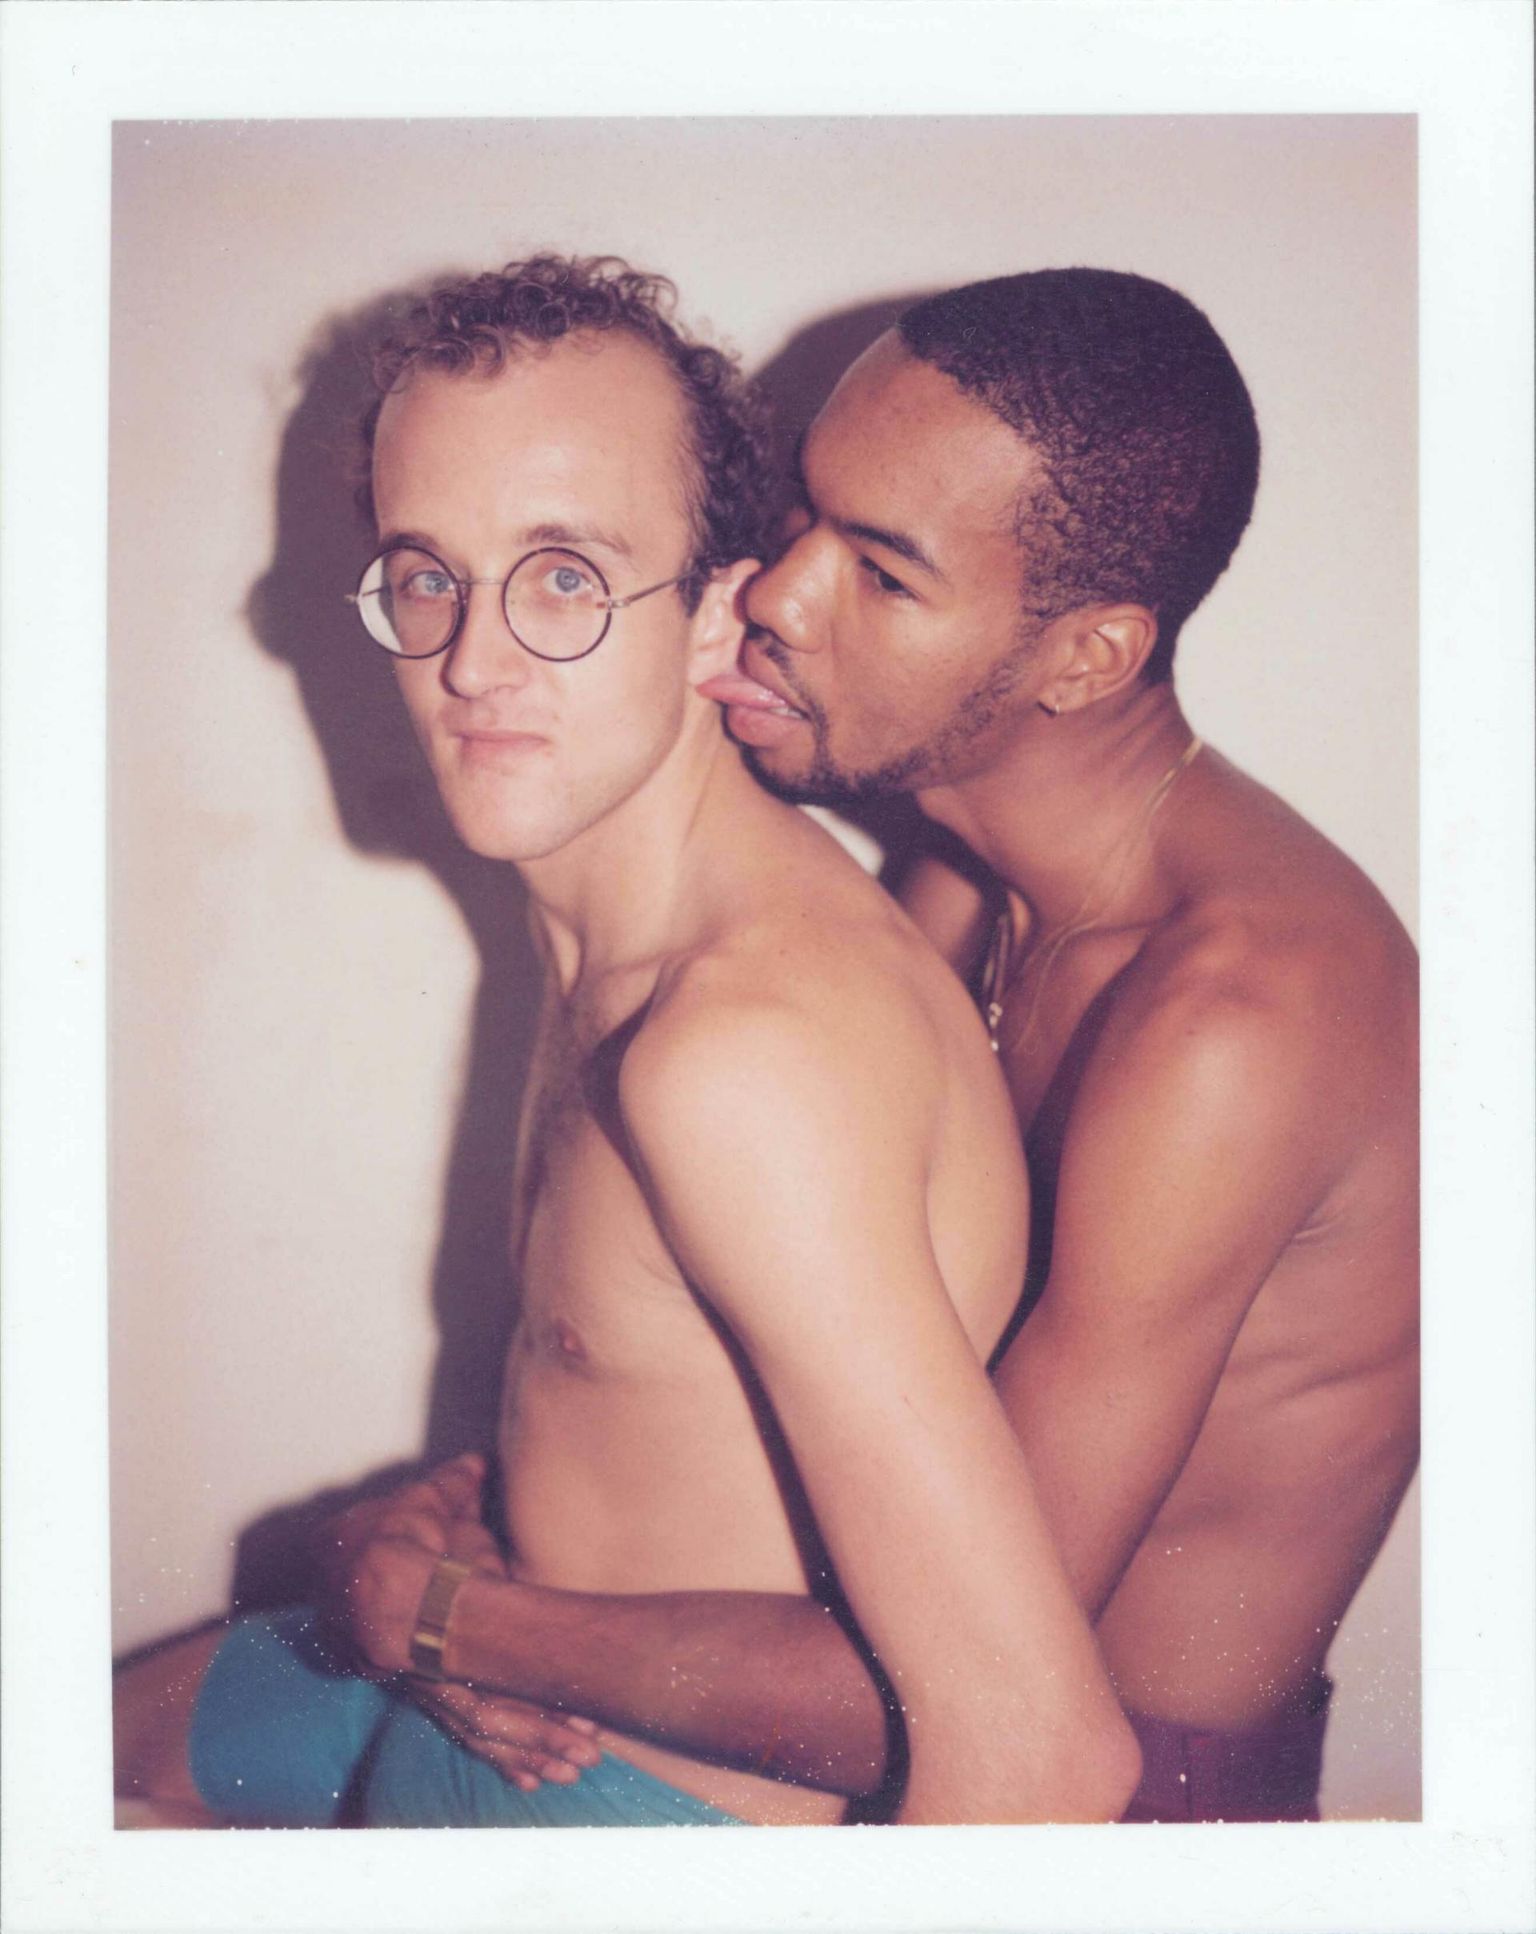 Kunstnik Keith Haring ja tema peika Jean Dubose aastal 1983. Mõlemad surid hiljem aidsi. 